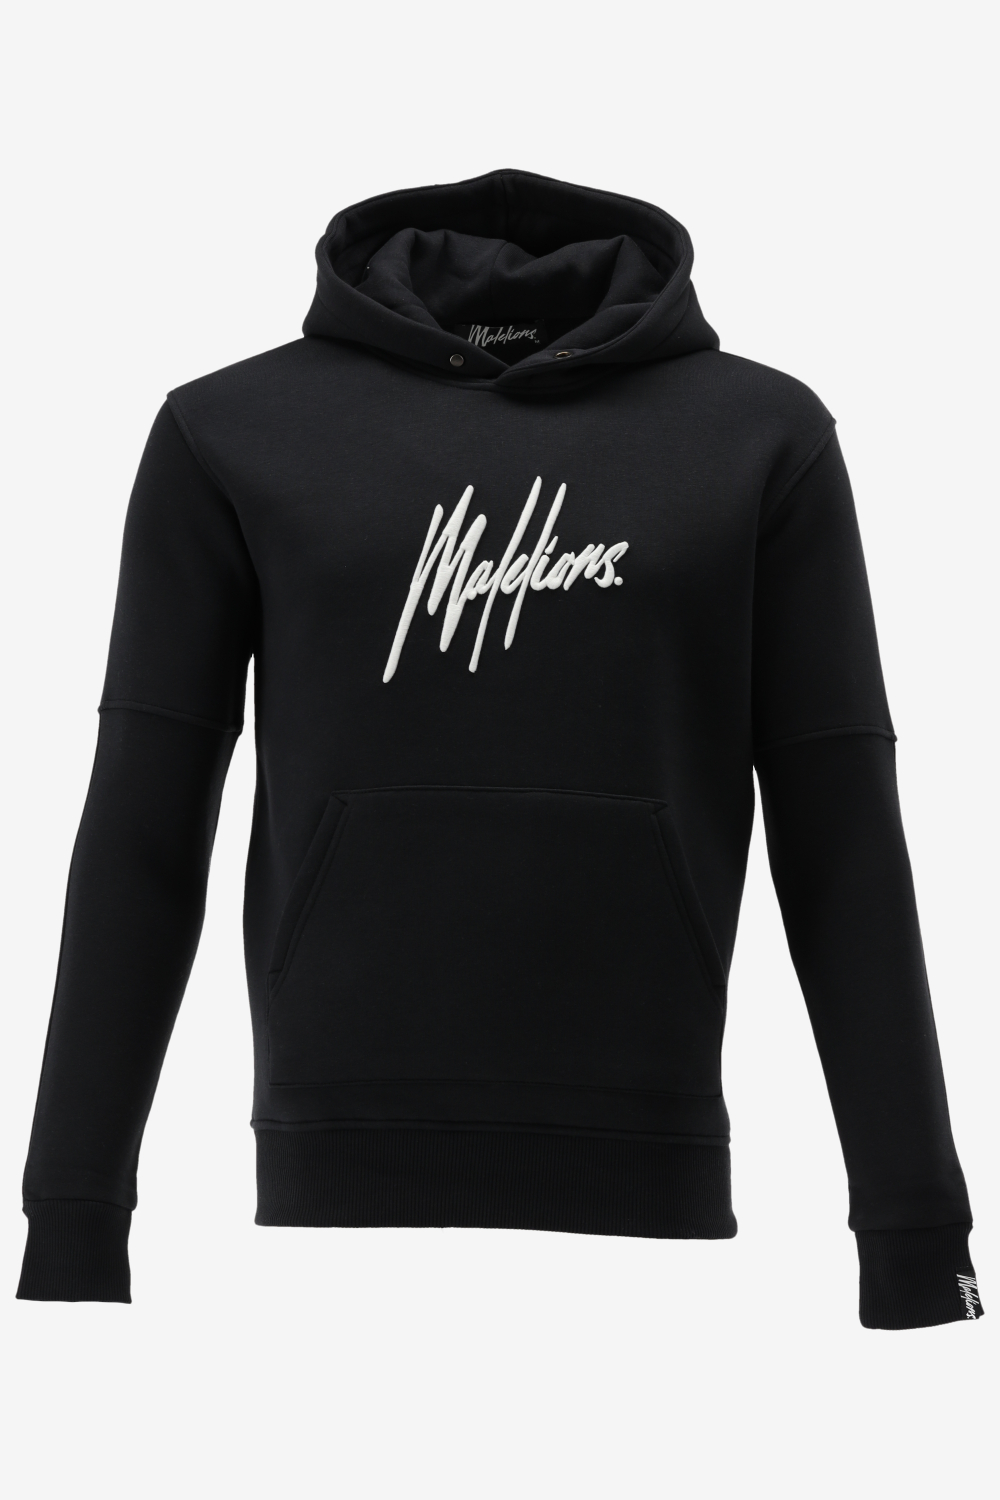 Malelions hoodie men essentials hoodie maat 4XL